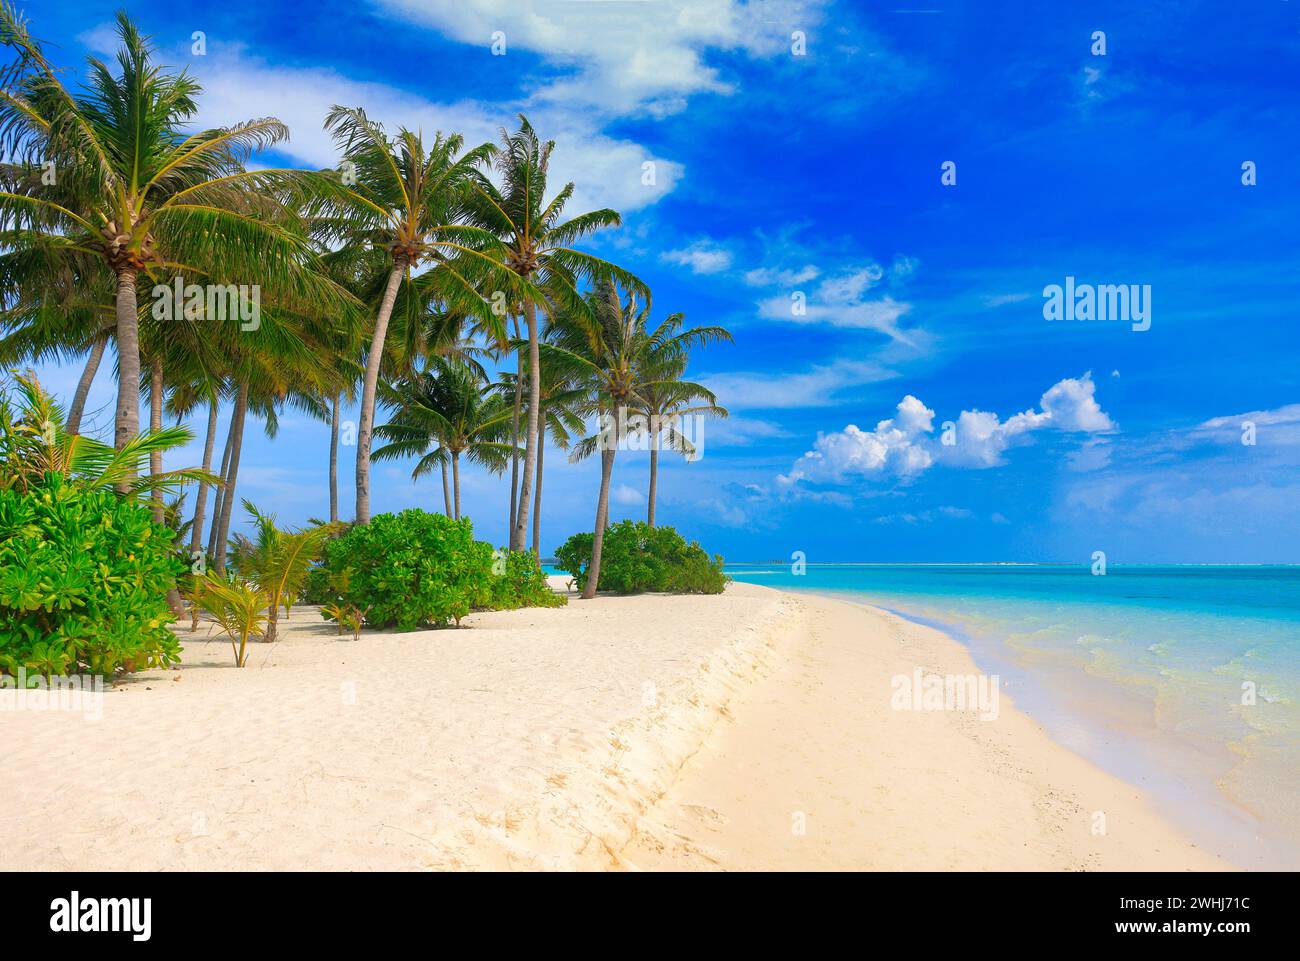 Plage idyllique avec palmiers aux Maldives, océan Indien Banque D'Images